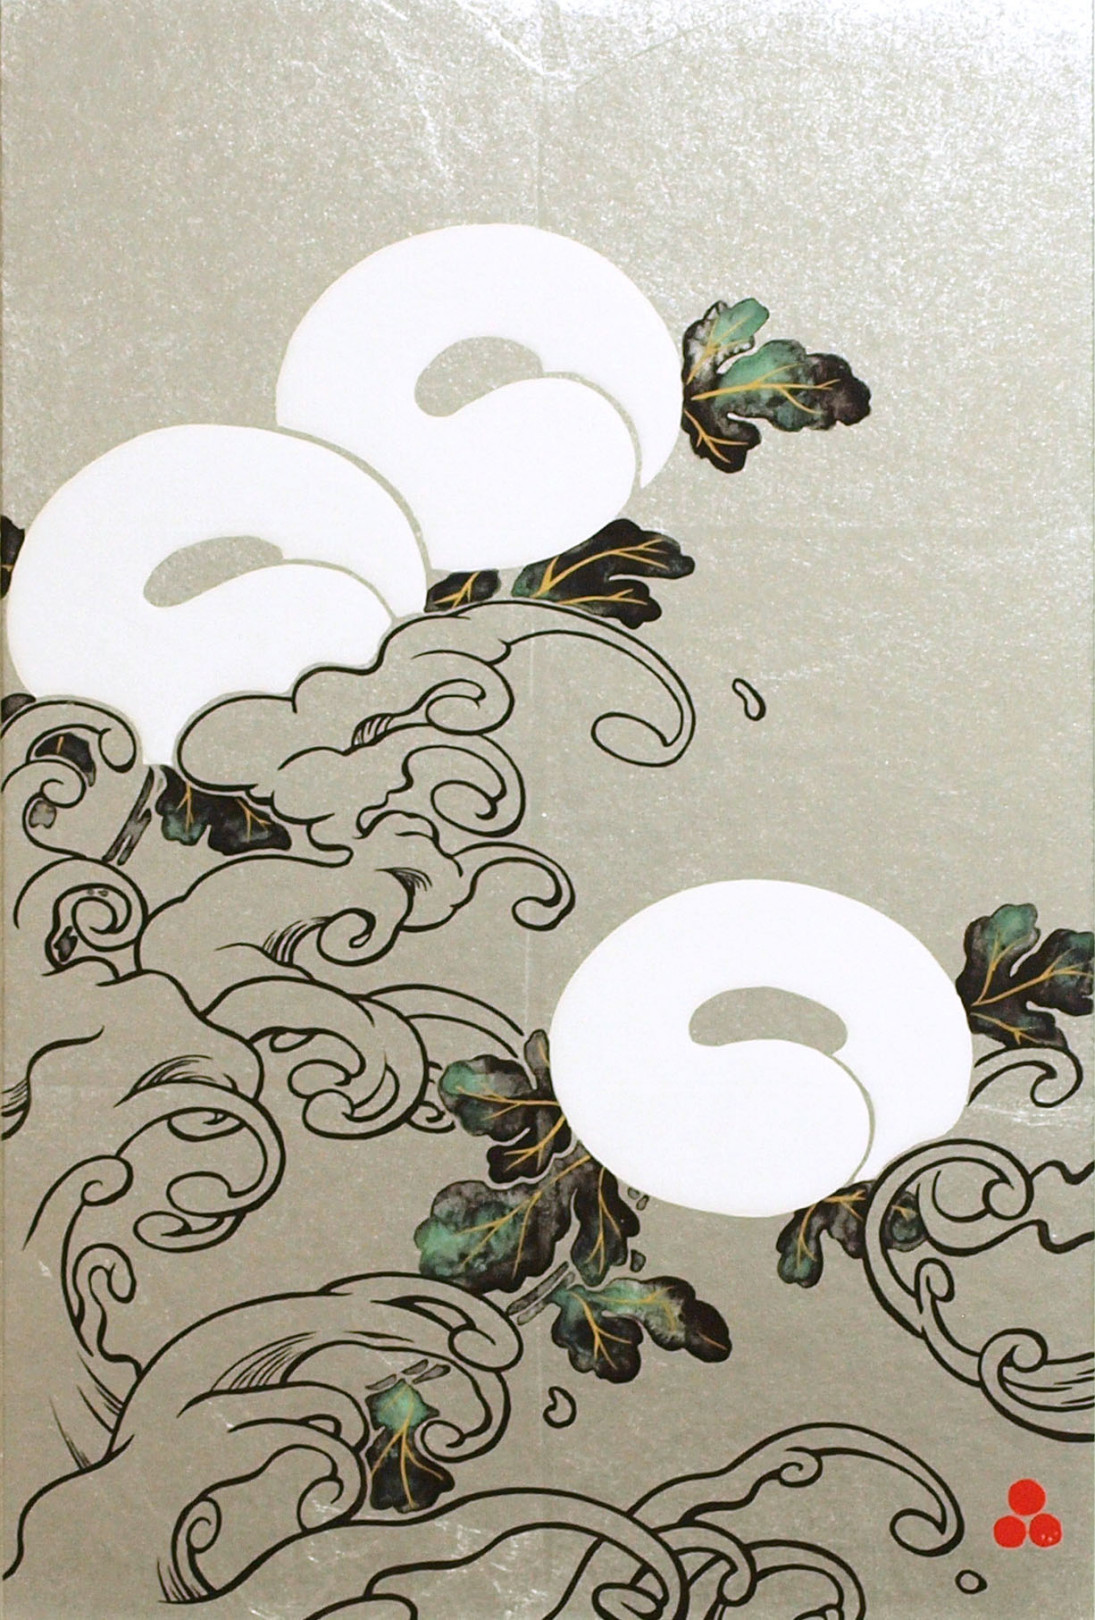 「菊花流水図」/ 375×250 / 顔料、墨、銀、箔、膠、和、紙、パネル / 2018年